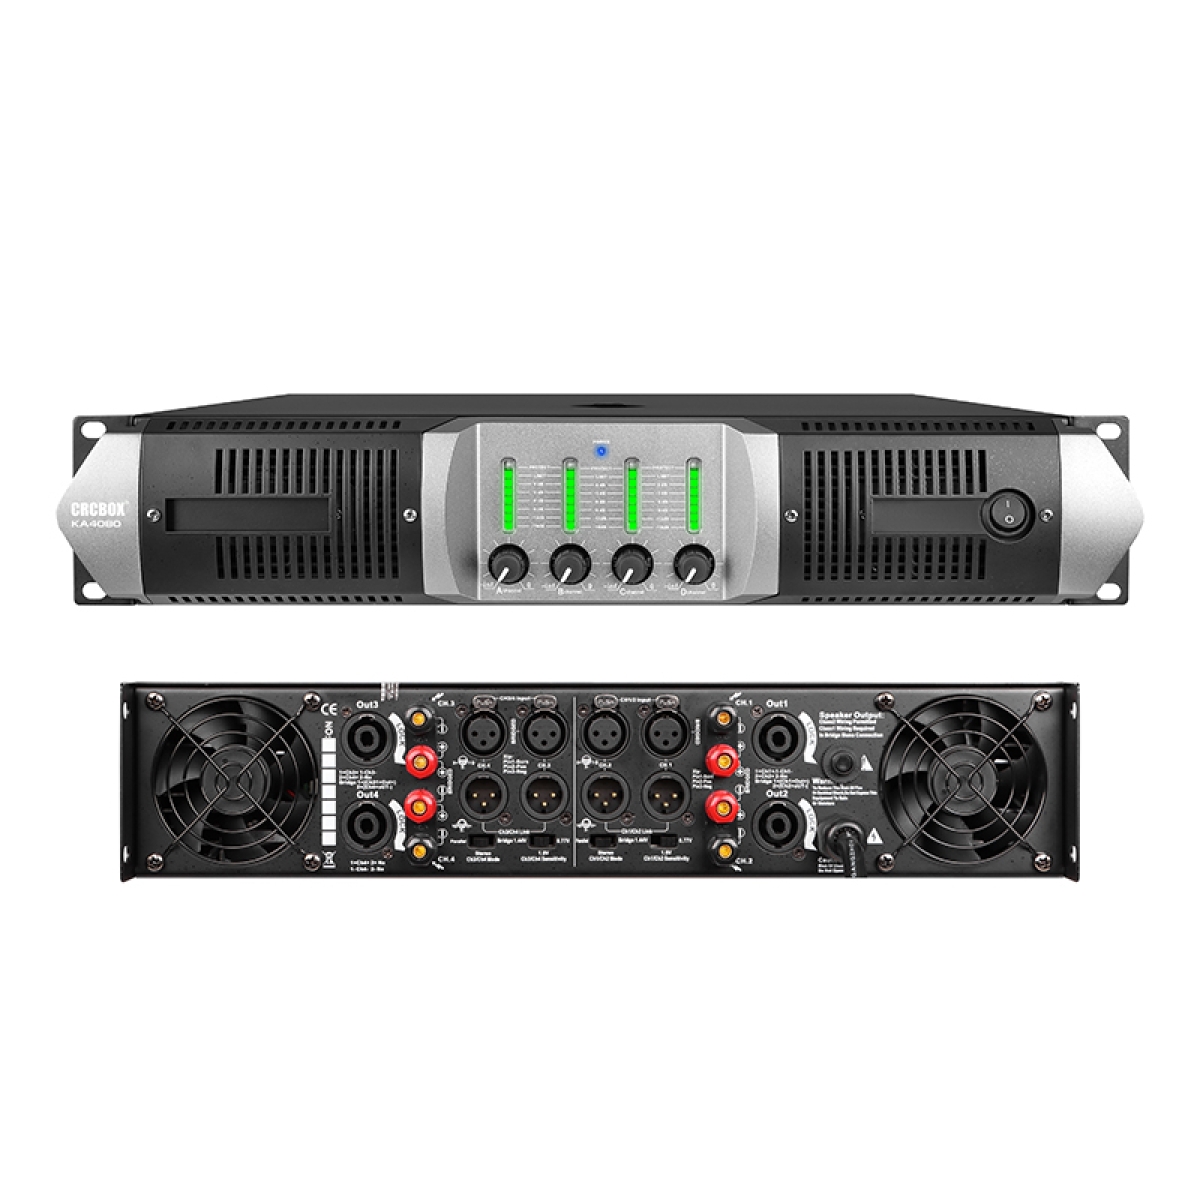 Усилители двухканальные CRCBOX TA-8060 усилители двухканальные crcbox hk 1200